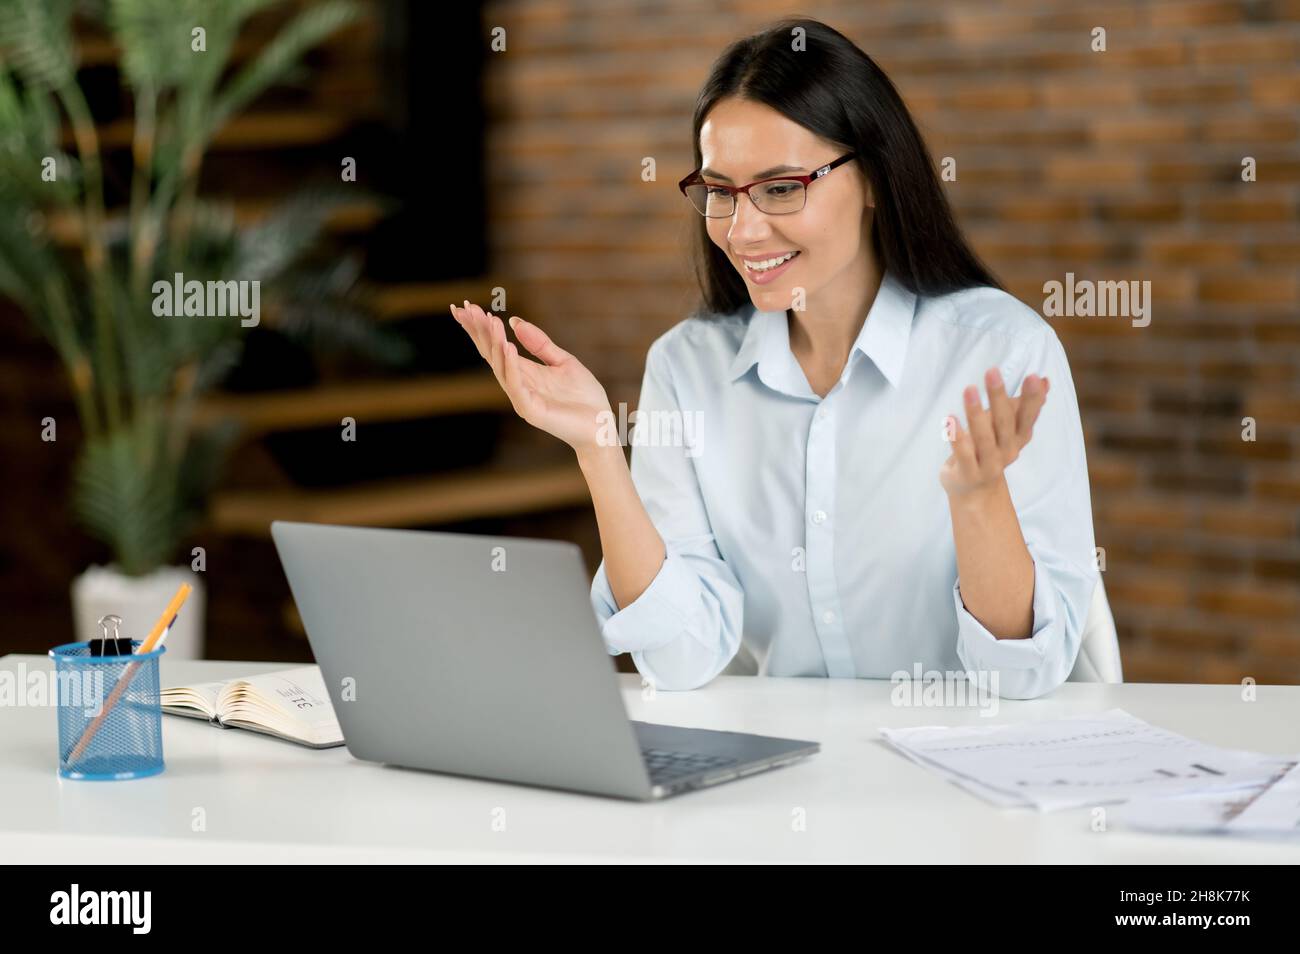 Belle femme d'affaires caucasienne confiante, pigiste, Manager, en utilisant un ordinateur portable, en discutant sur vidéo conférence avec le client ou collègue, en discutant de projet d'affaires, en faisant des gestes avec la main, sourires Banque D'Images